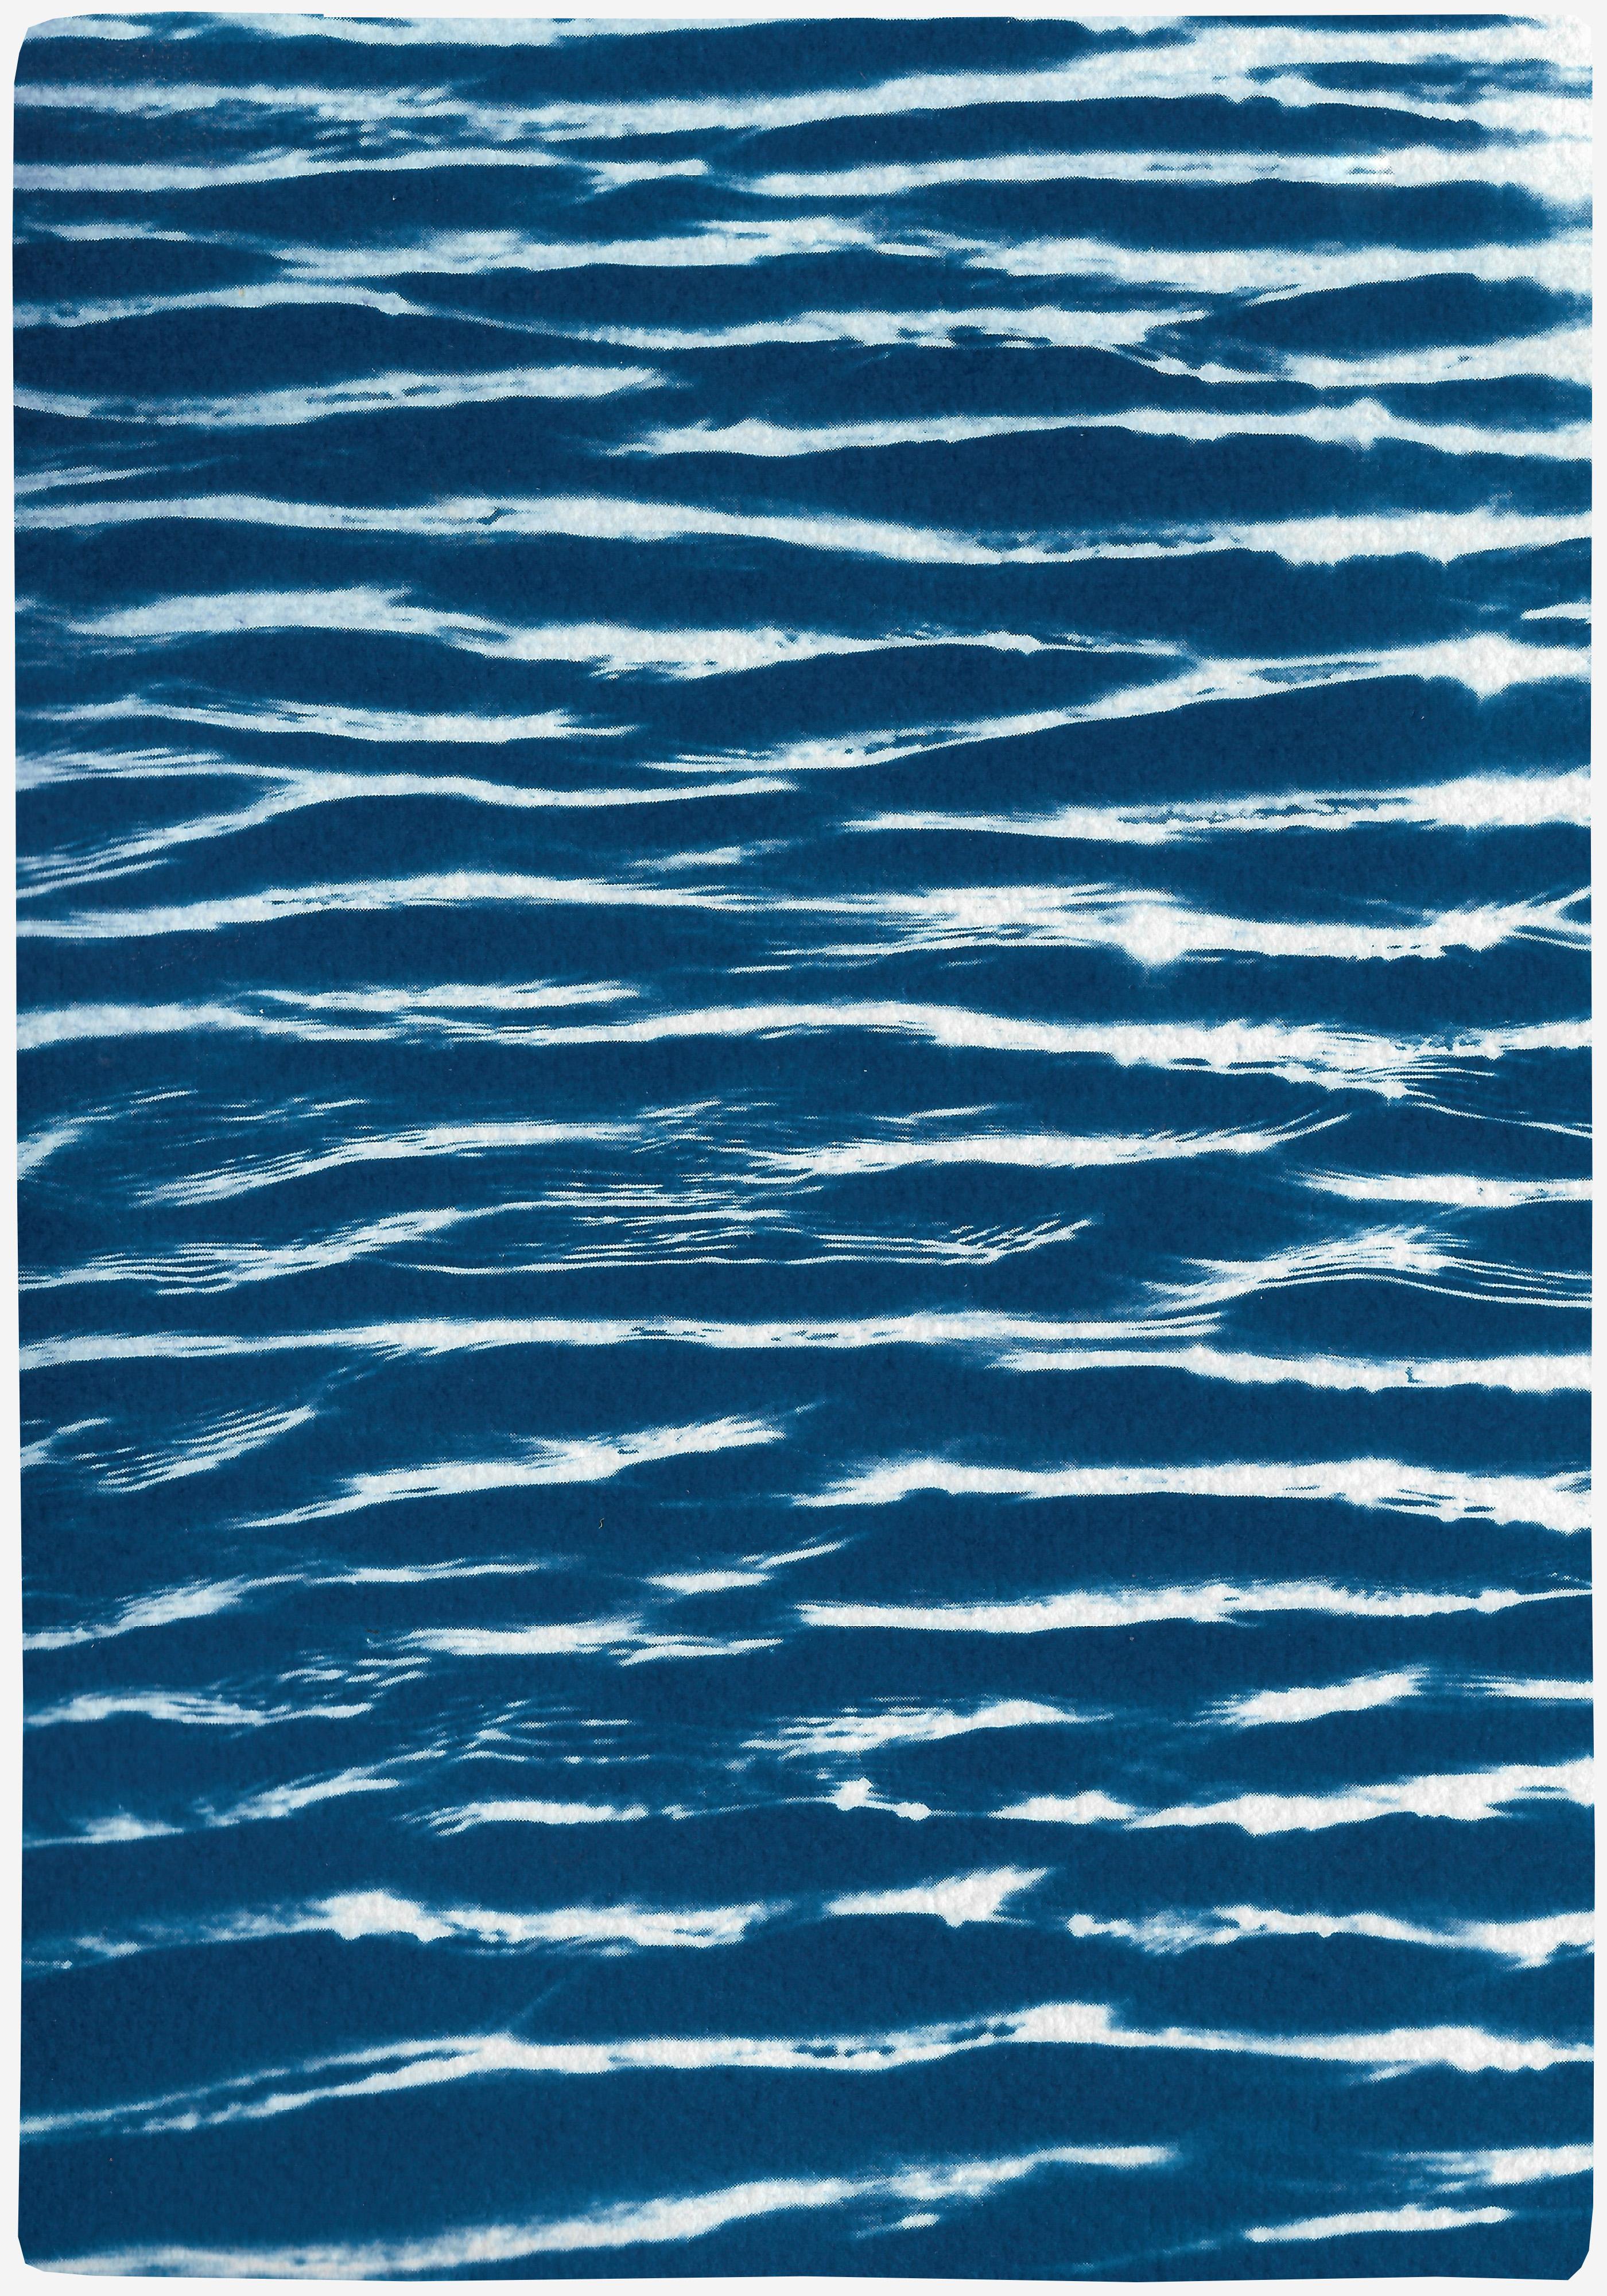 Tranquil Aquarellmuster, zeitgenössische großformatige Cyanotypie auf Aquarellpapier (Blau), Landscape Art, von Kind of Cyan